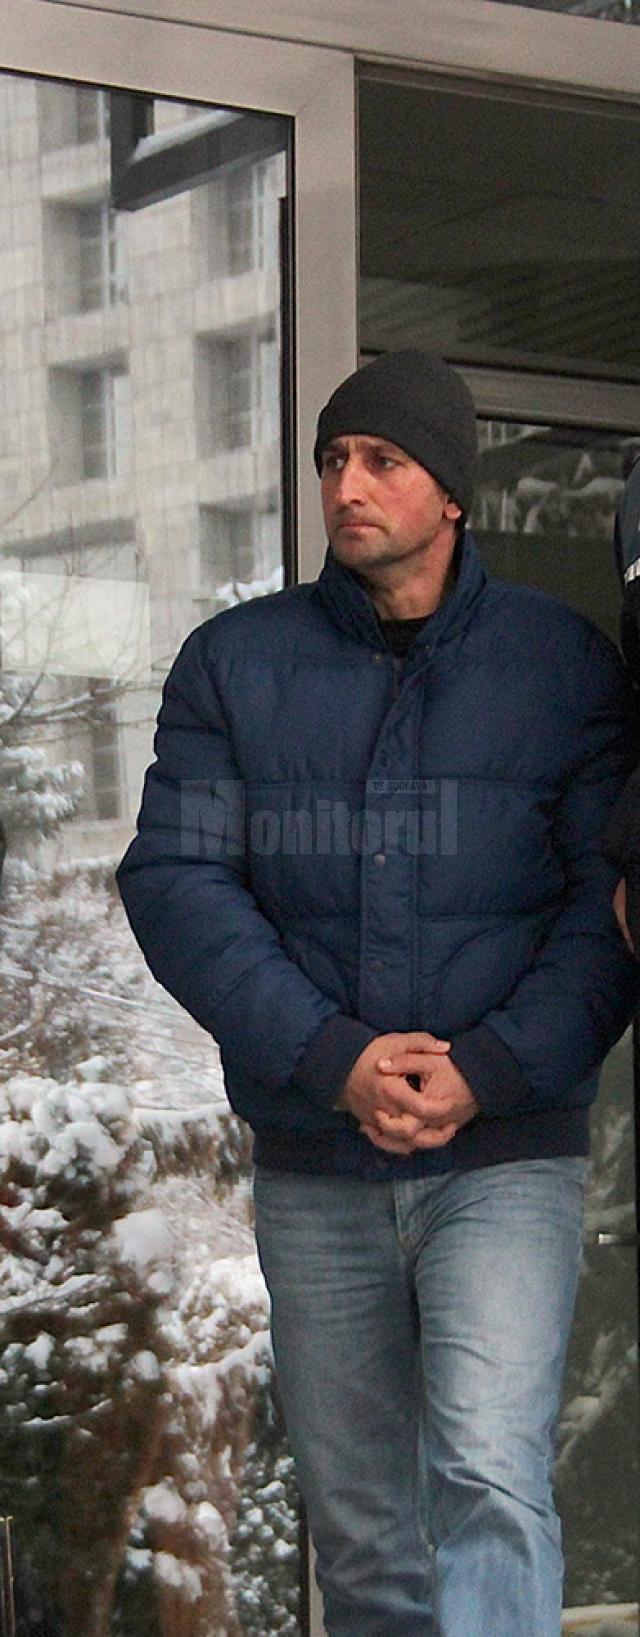 Gheorghiţă Drăgoi, agent de poliţie în cadrul Poliţiei municipiului Câmpulung Moldovenesc – Compartimentul Rutier, a fost trimis în judecată pentru comiterea a opt infracţiuni